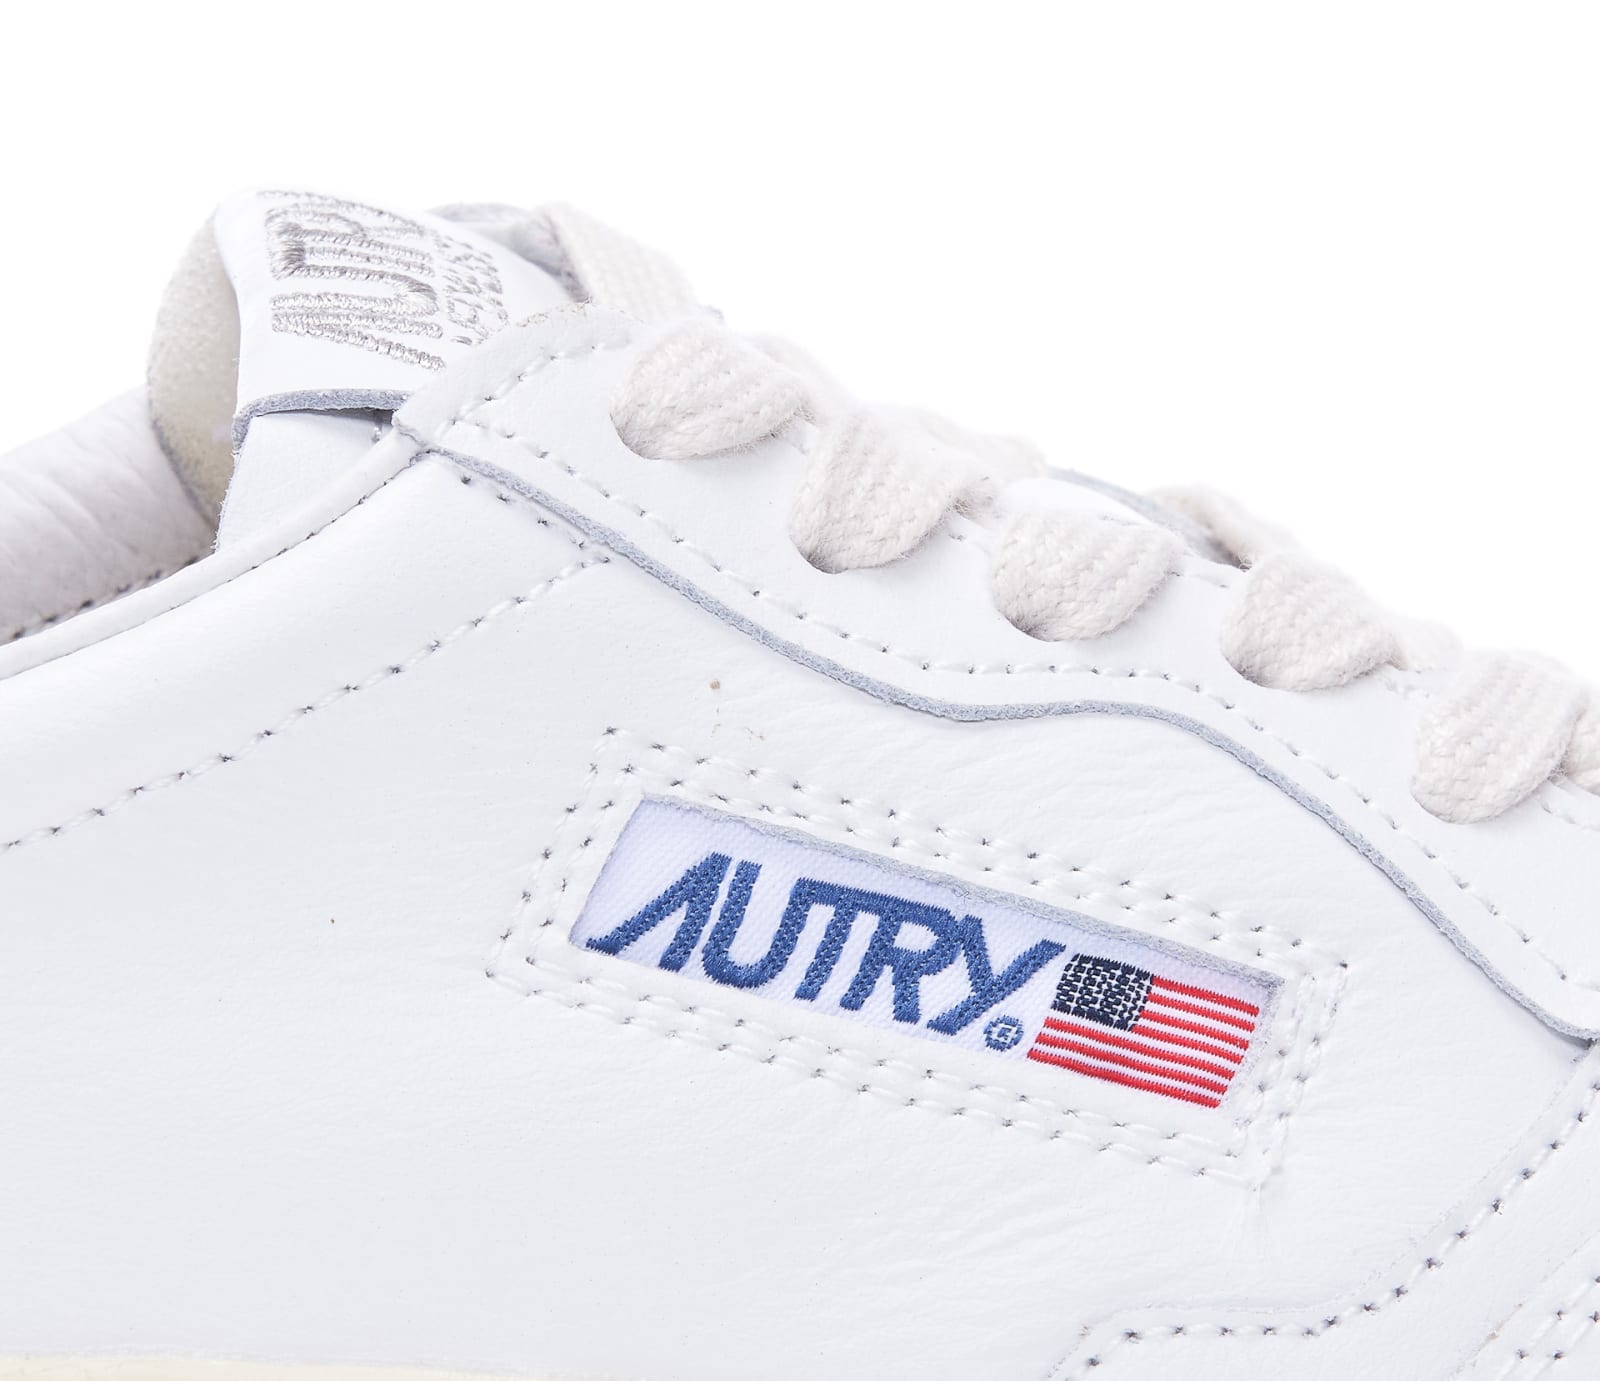 Shop Autry Low Medialist Sneakers In Bianco